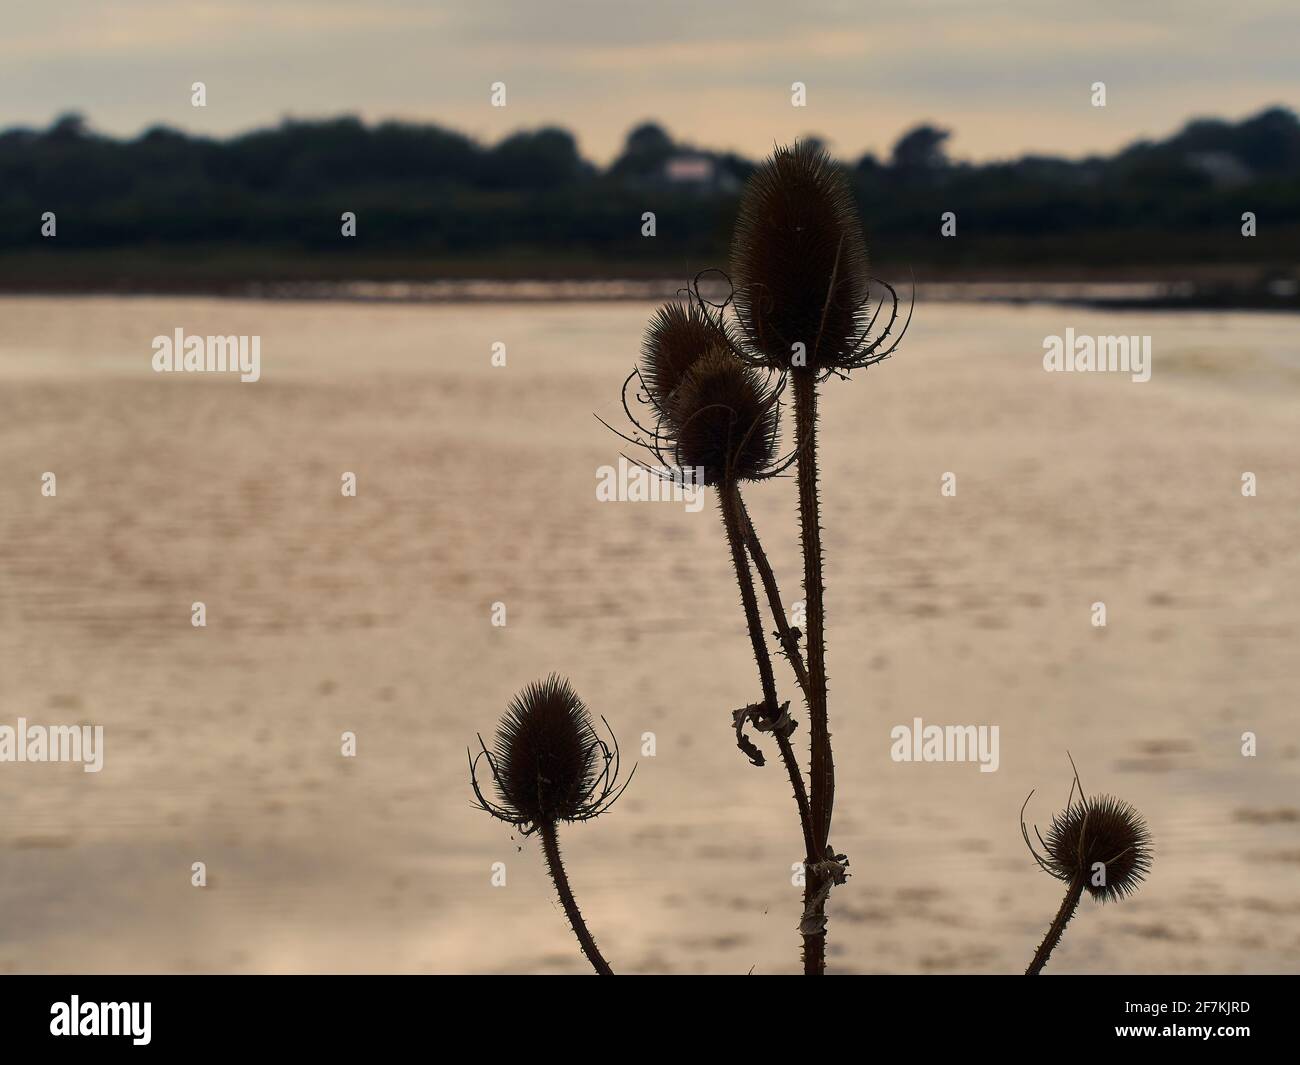 Immagine calma e semplice di una pianta di teasel con le sue intricate teste di semi che si stagliano contro un lago sotto un cielo roseo. Foto Stock